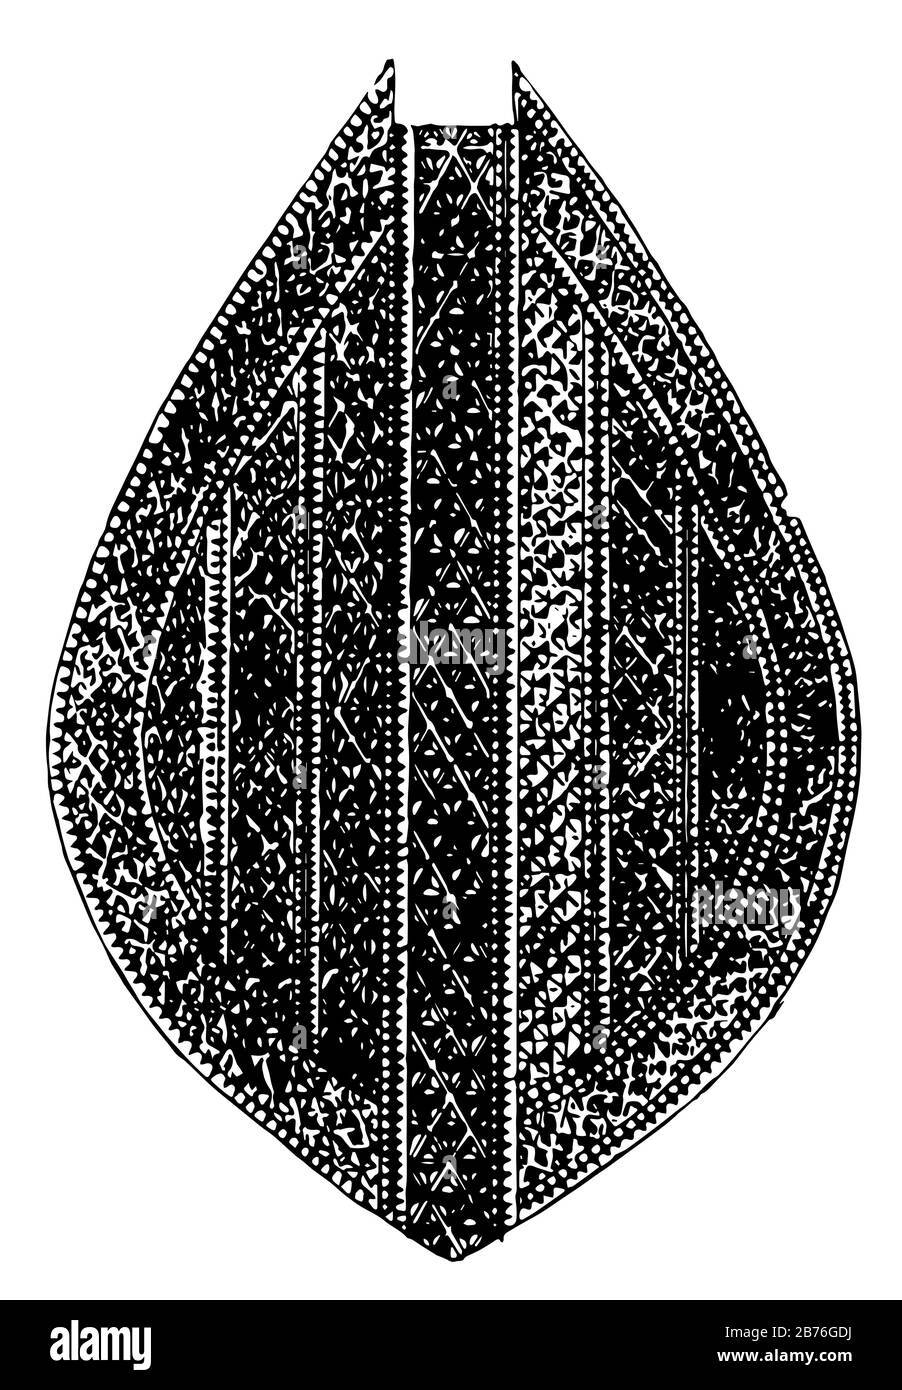 Maori-Paddel sind Holzschnitzereien, Vintage-Linien-Zeichnungen oder Gravurabbildung. Stock Vektor